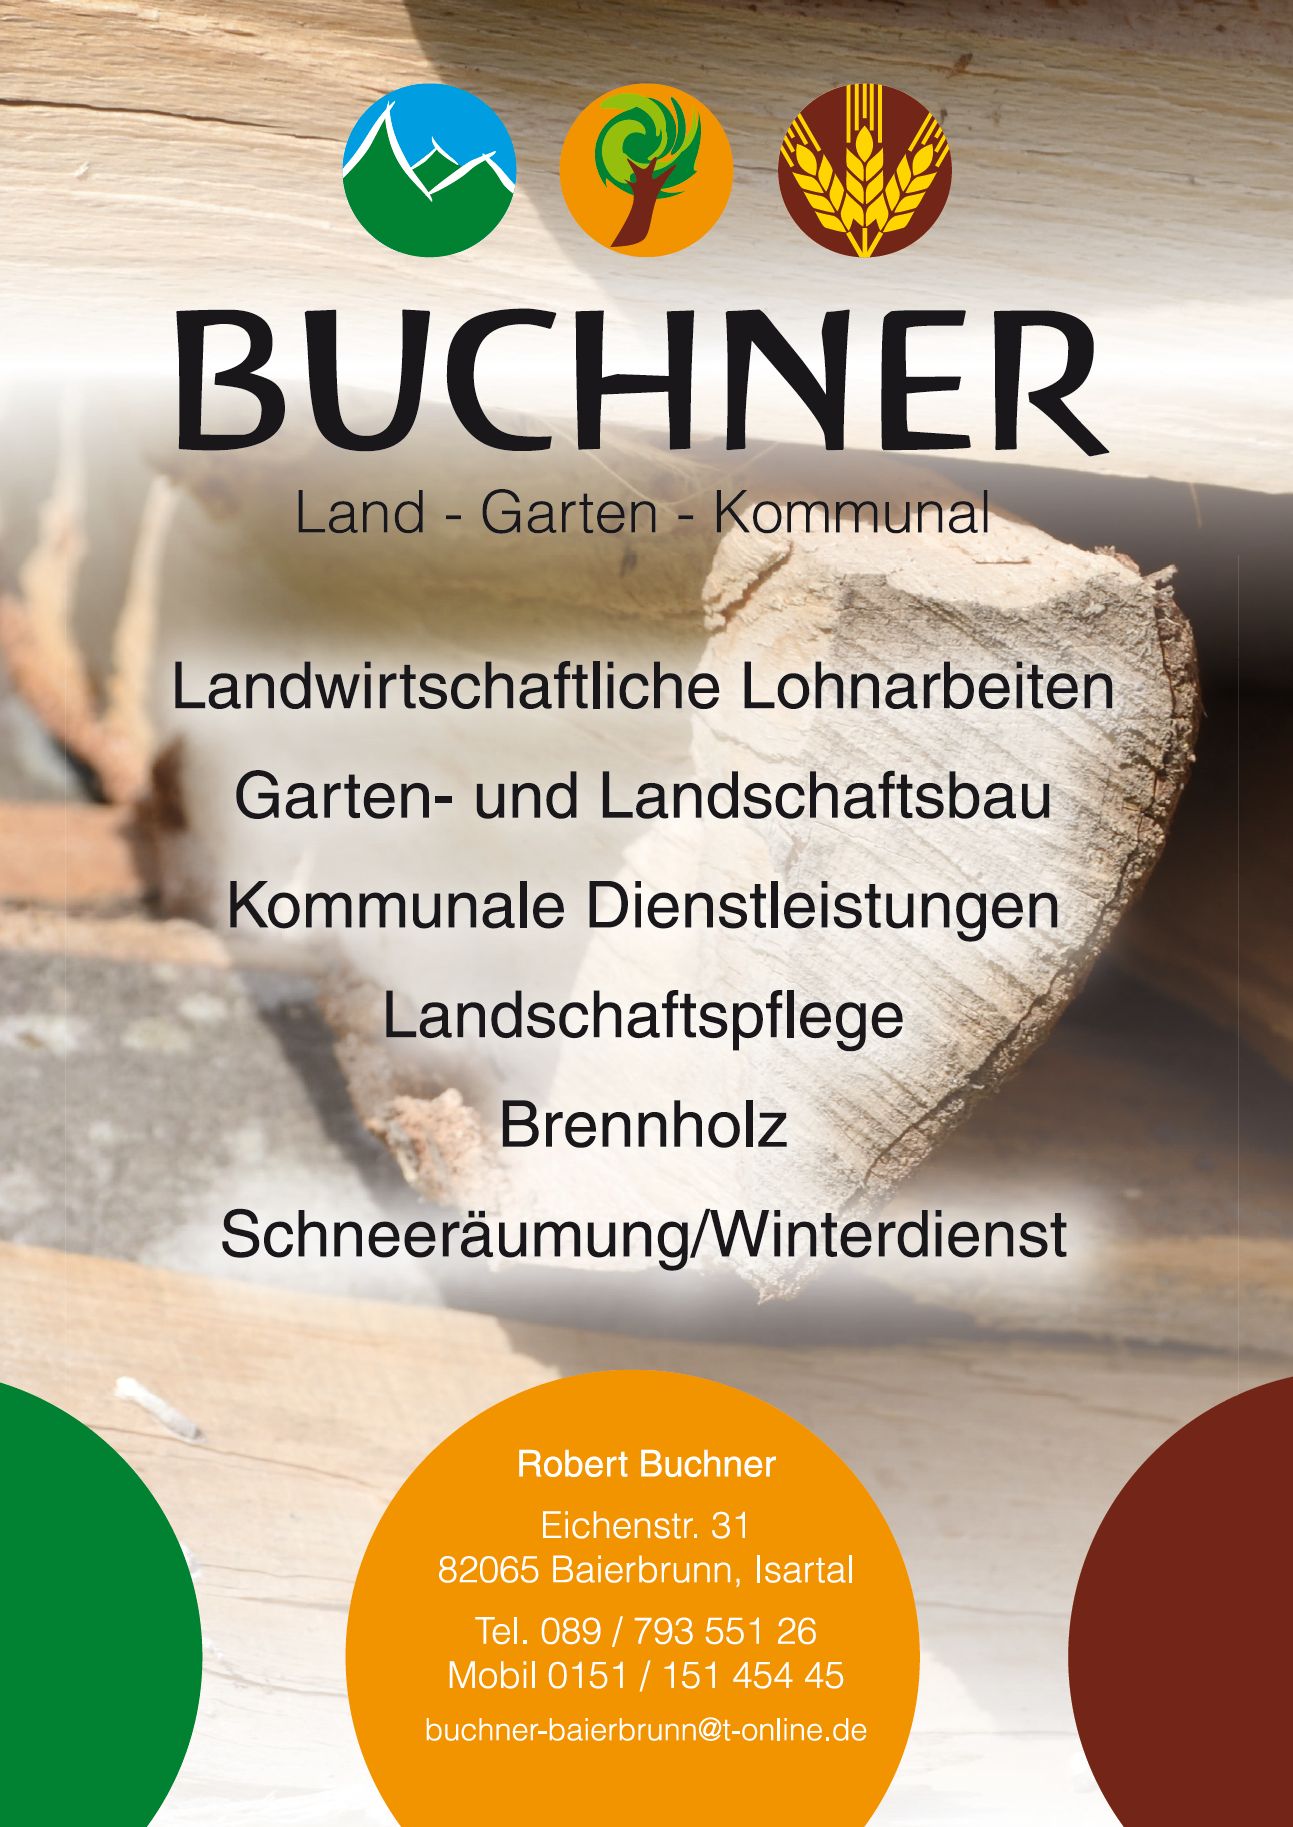 Buchner - Land - Garten - Kommunal